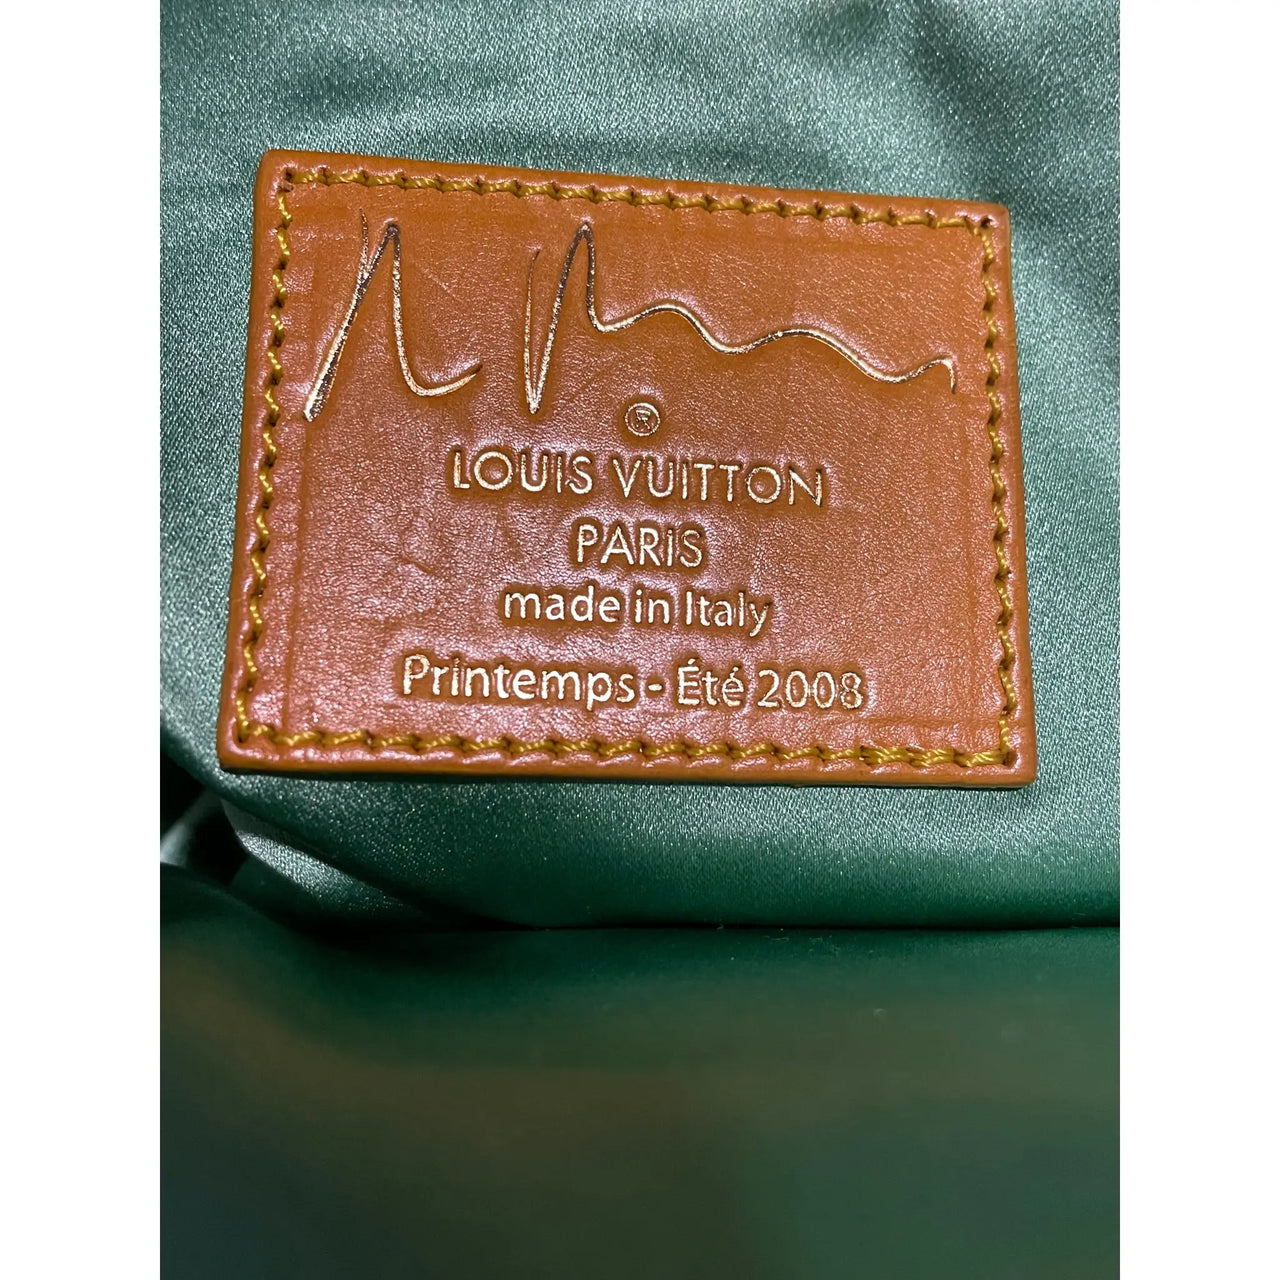 Authentic Louis Vuitton Monogram Printemps Ete Collection 2014 Bag